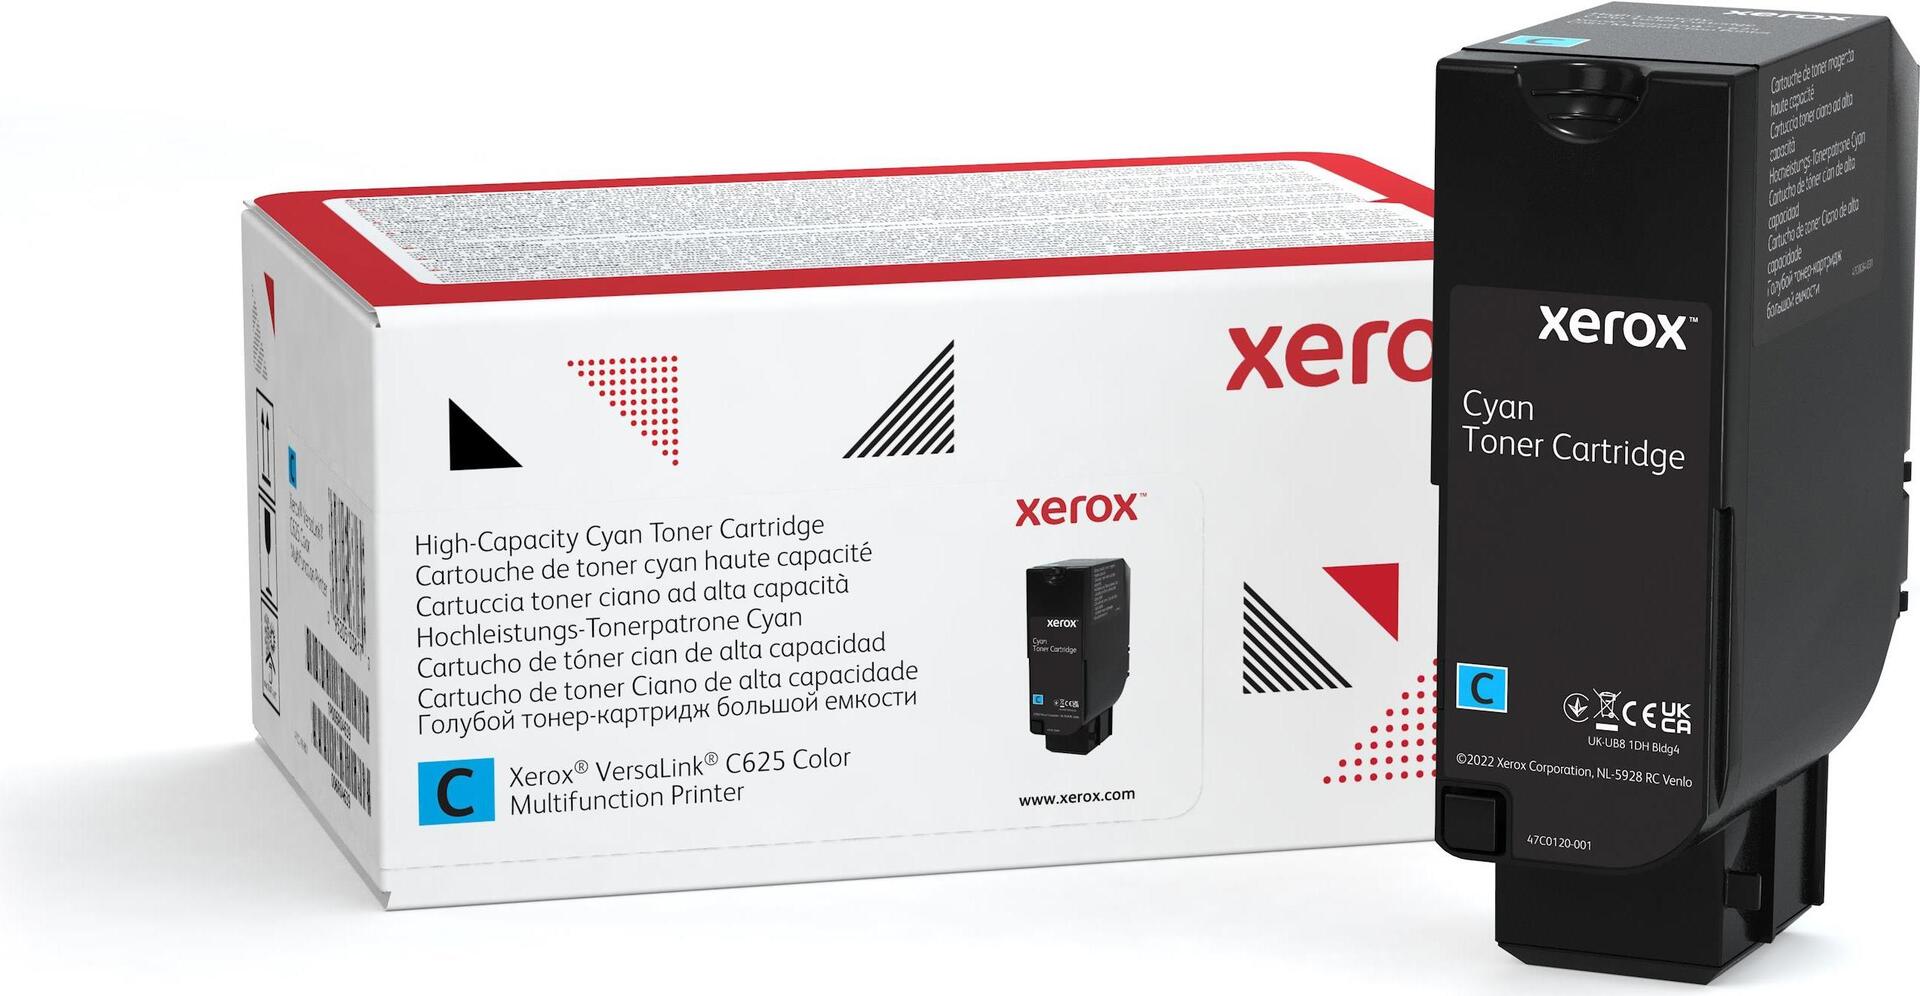 Xerox Mit hoher Kapazität (006R04637)